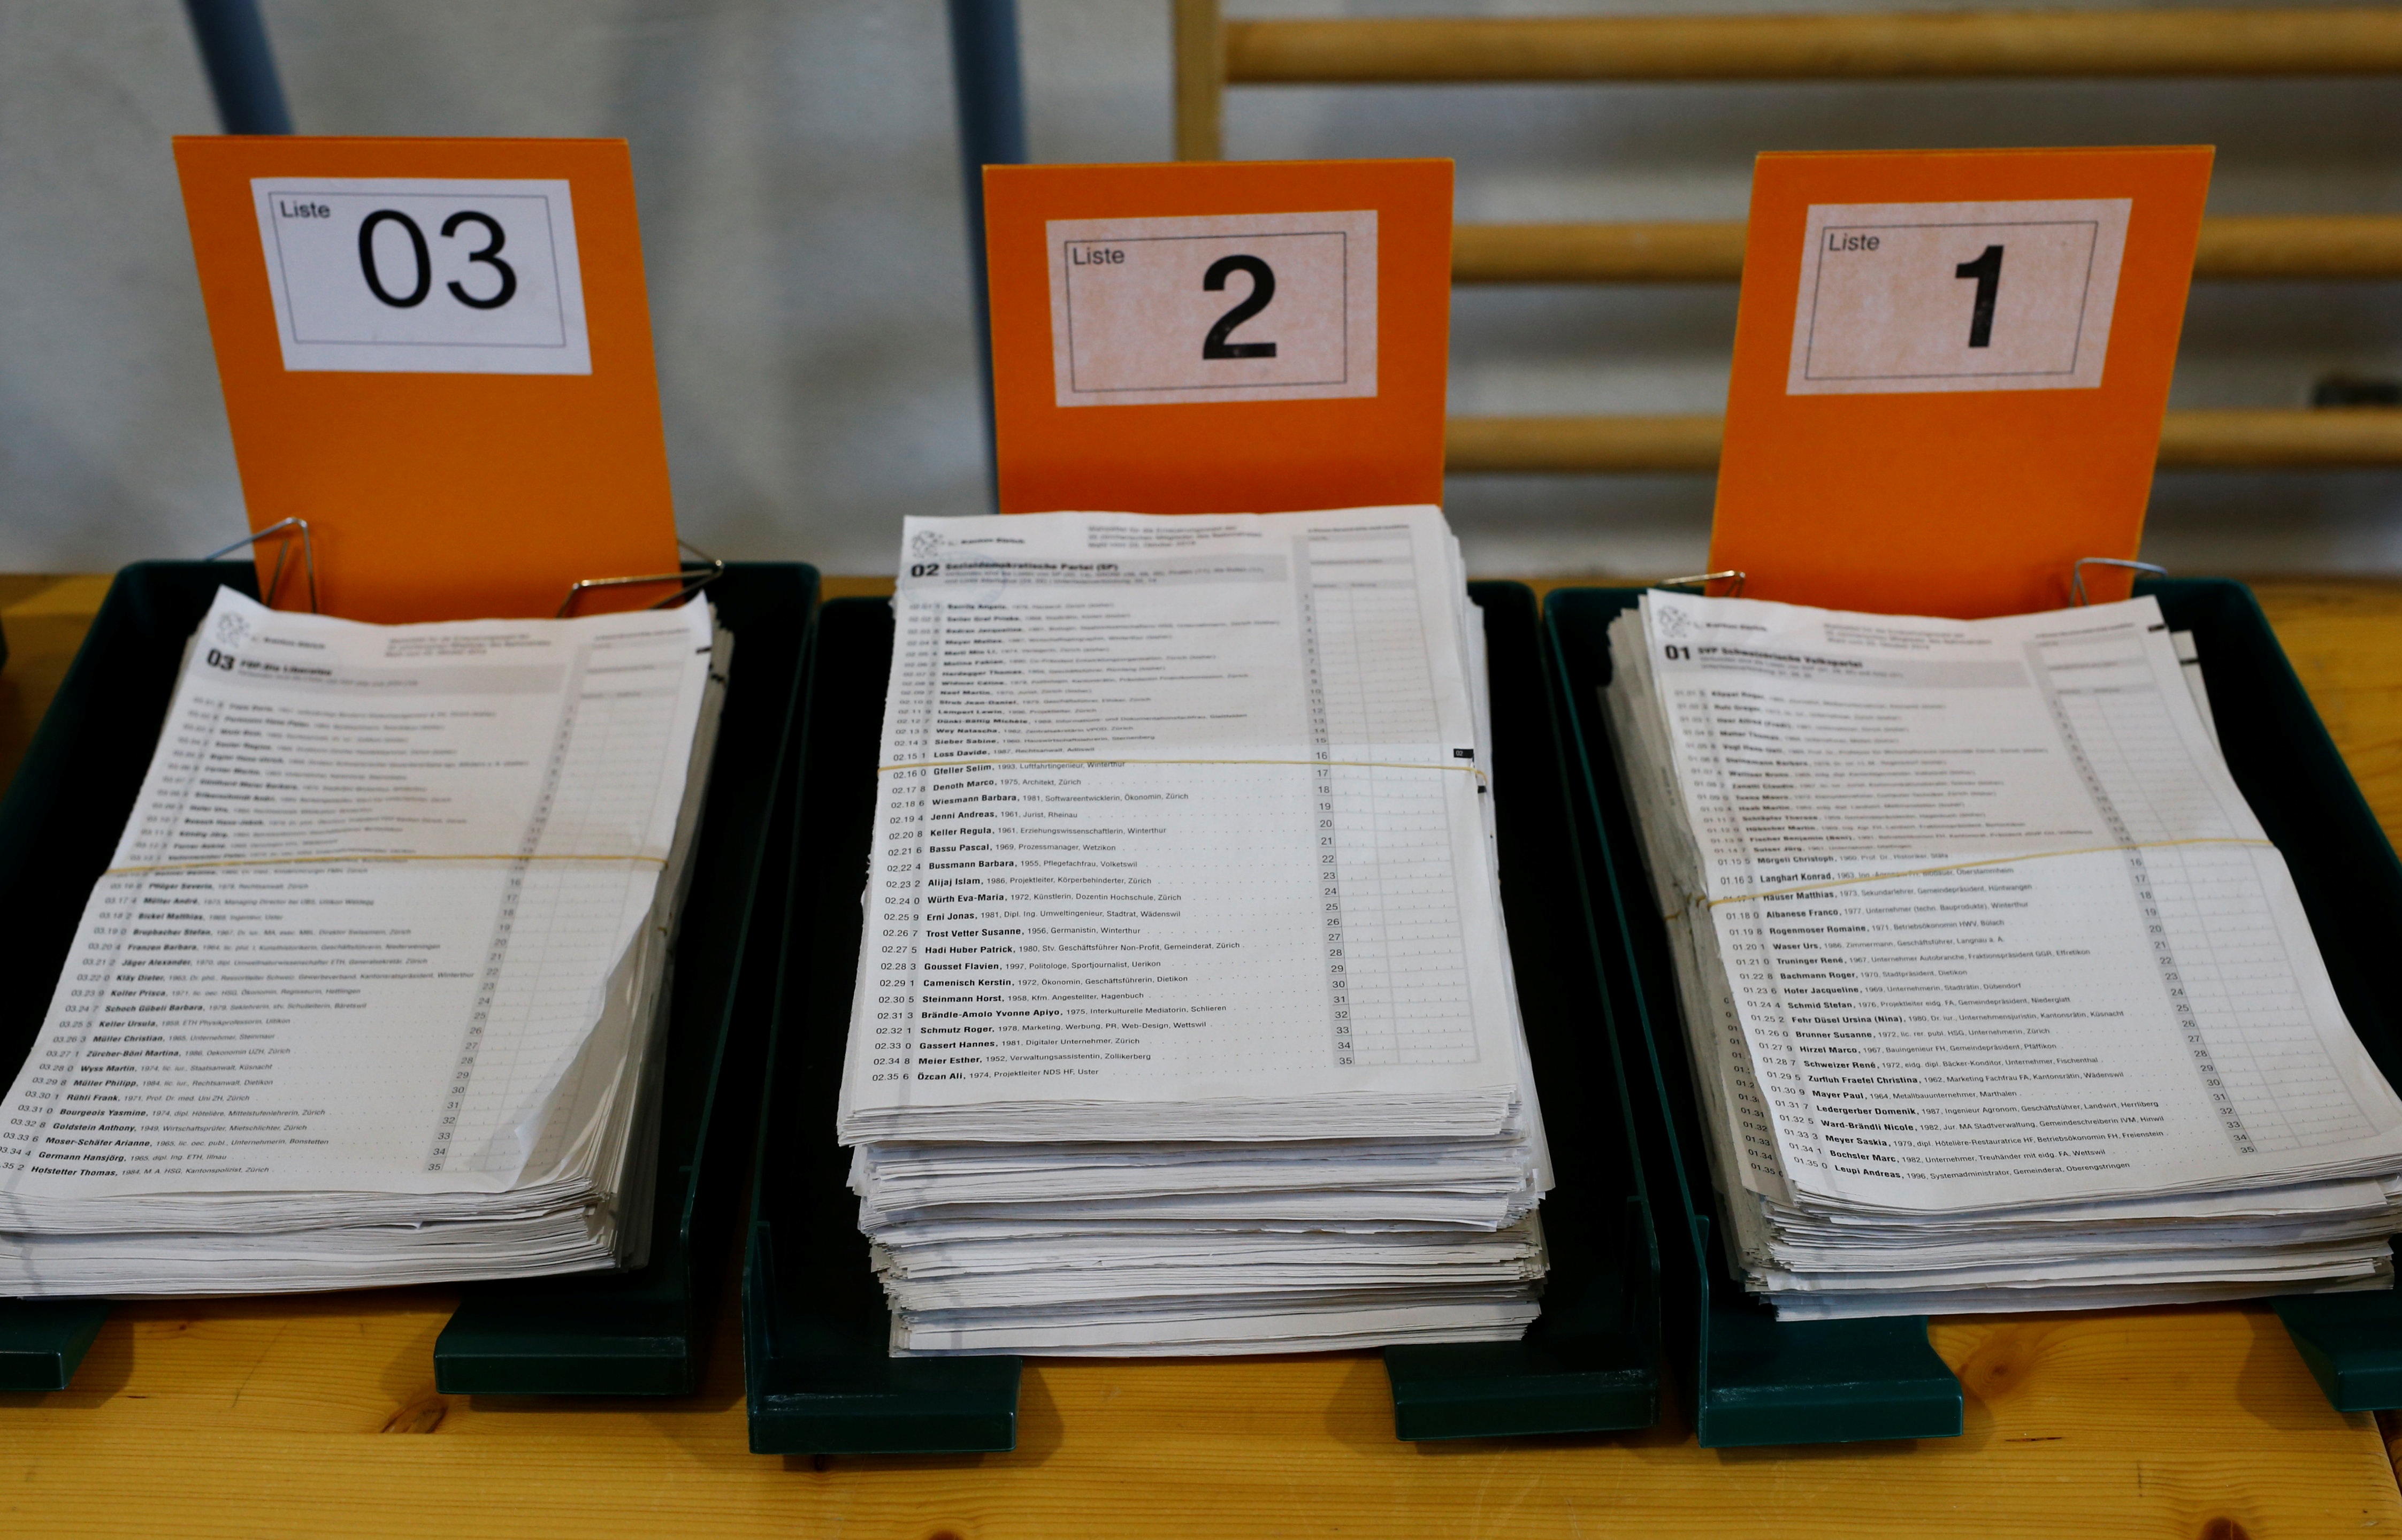 Ελβετία: Μεγάλοι κερδισμένοι των εκλογών οι “Πράσινοι” – Σημαντικές απώλειες για το πρώτο κόμμα